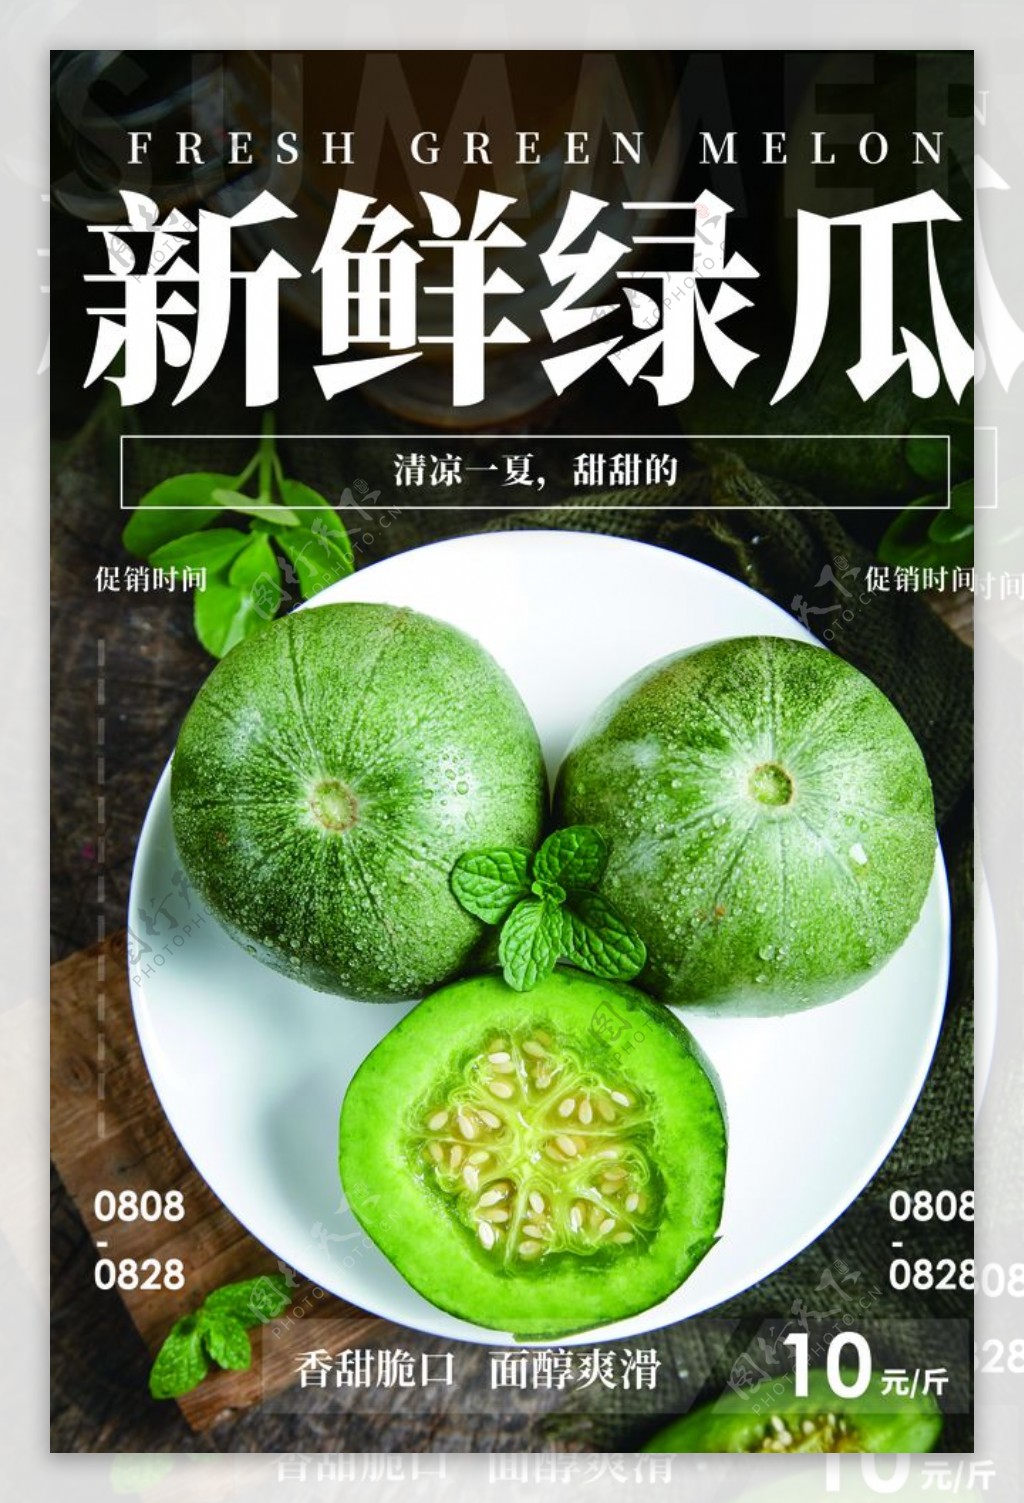 新鲜绿瓜水果活动宣传海报素材